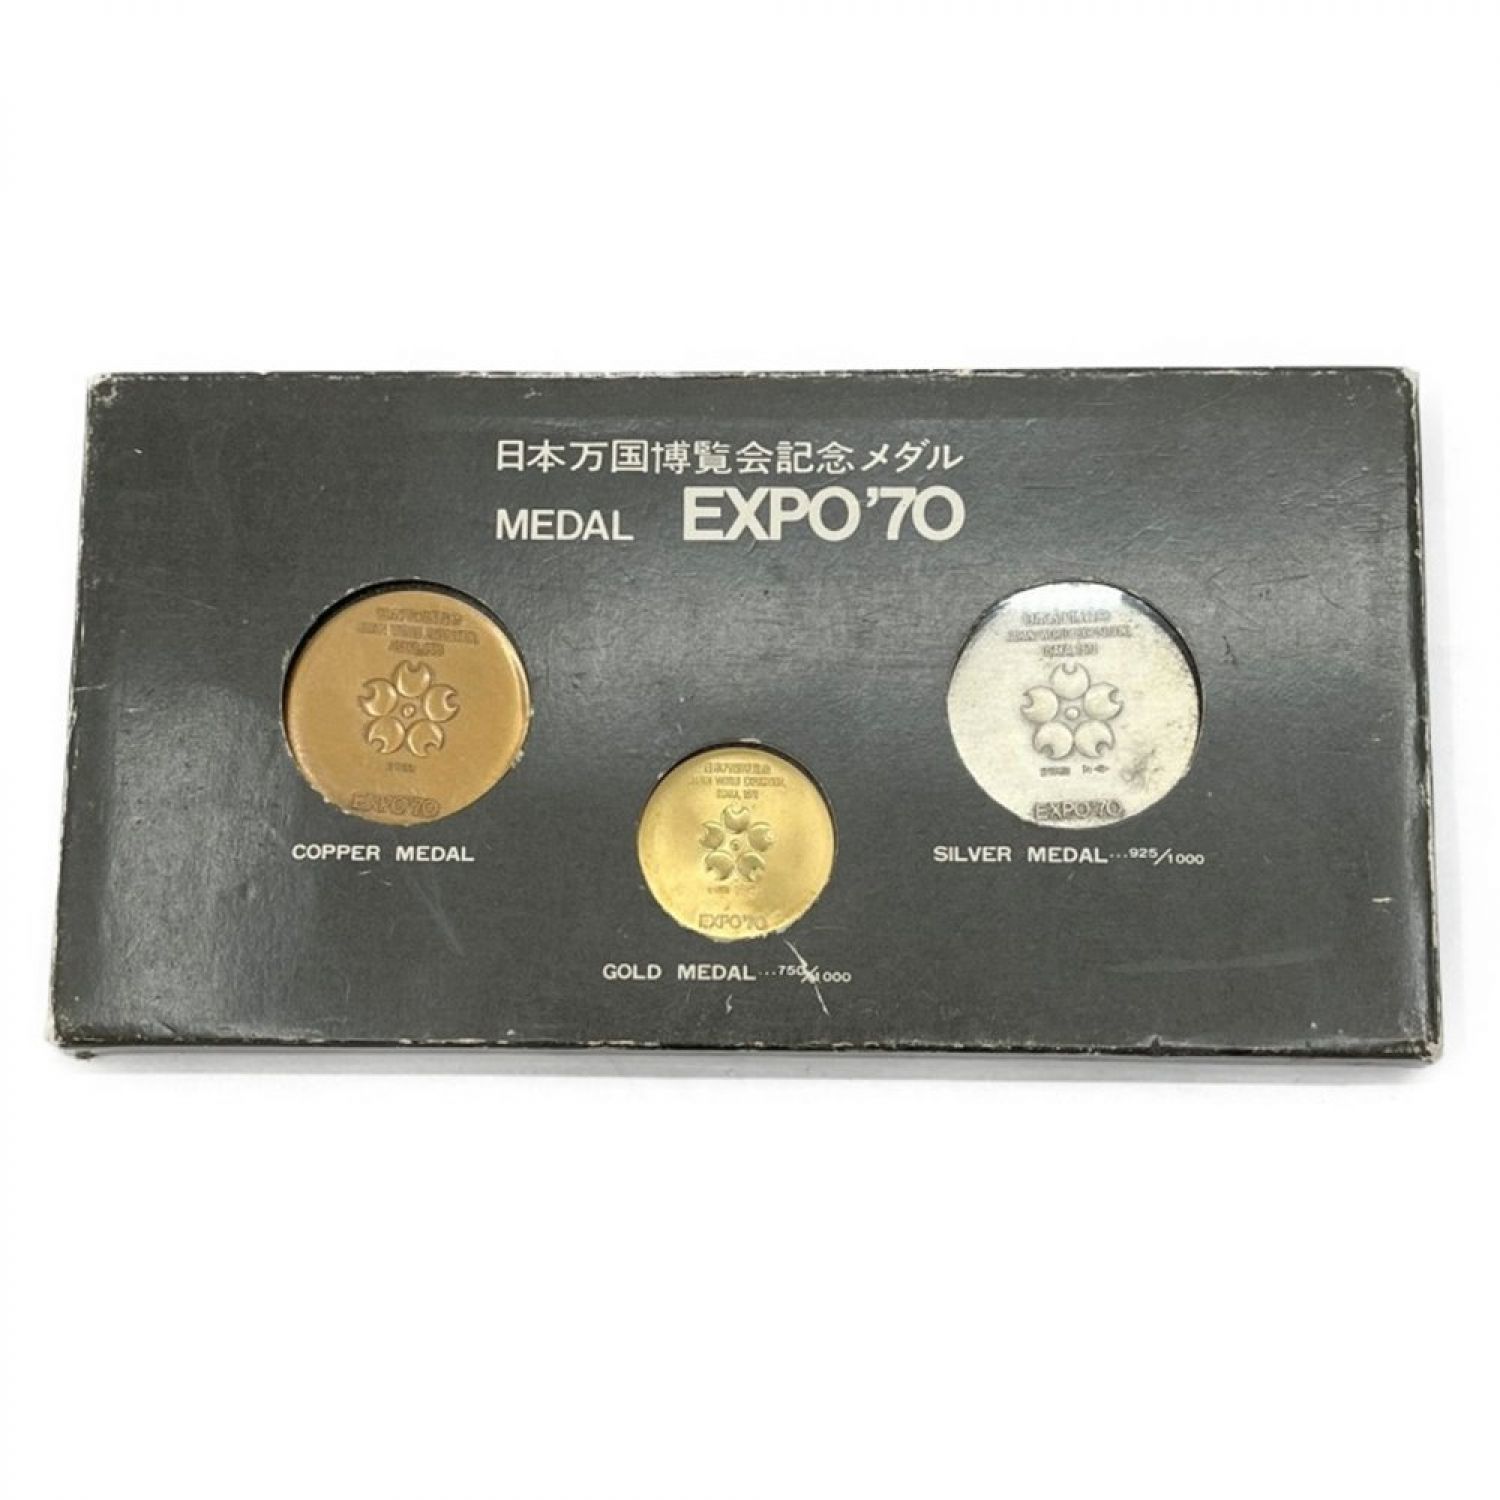 日本万国博覧会記念メダル日本万国博覧会記念メダル MEDAL EXPO'70 3点セット